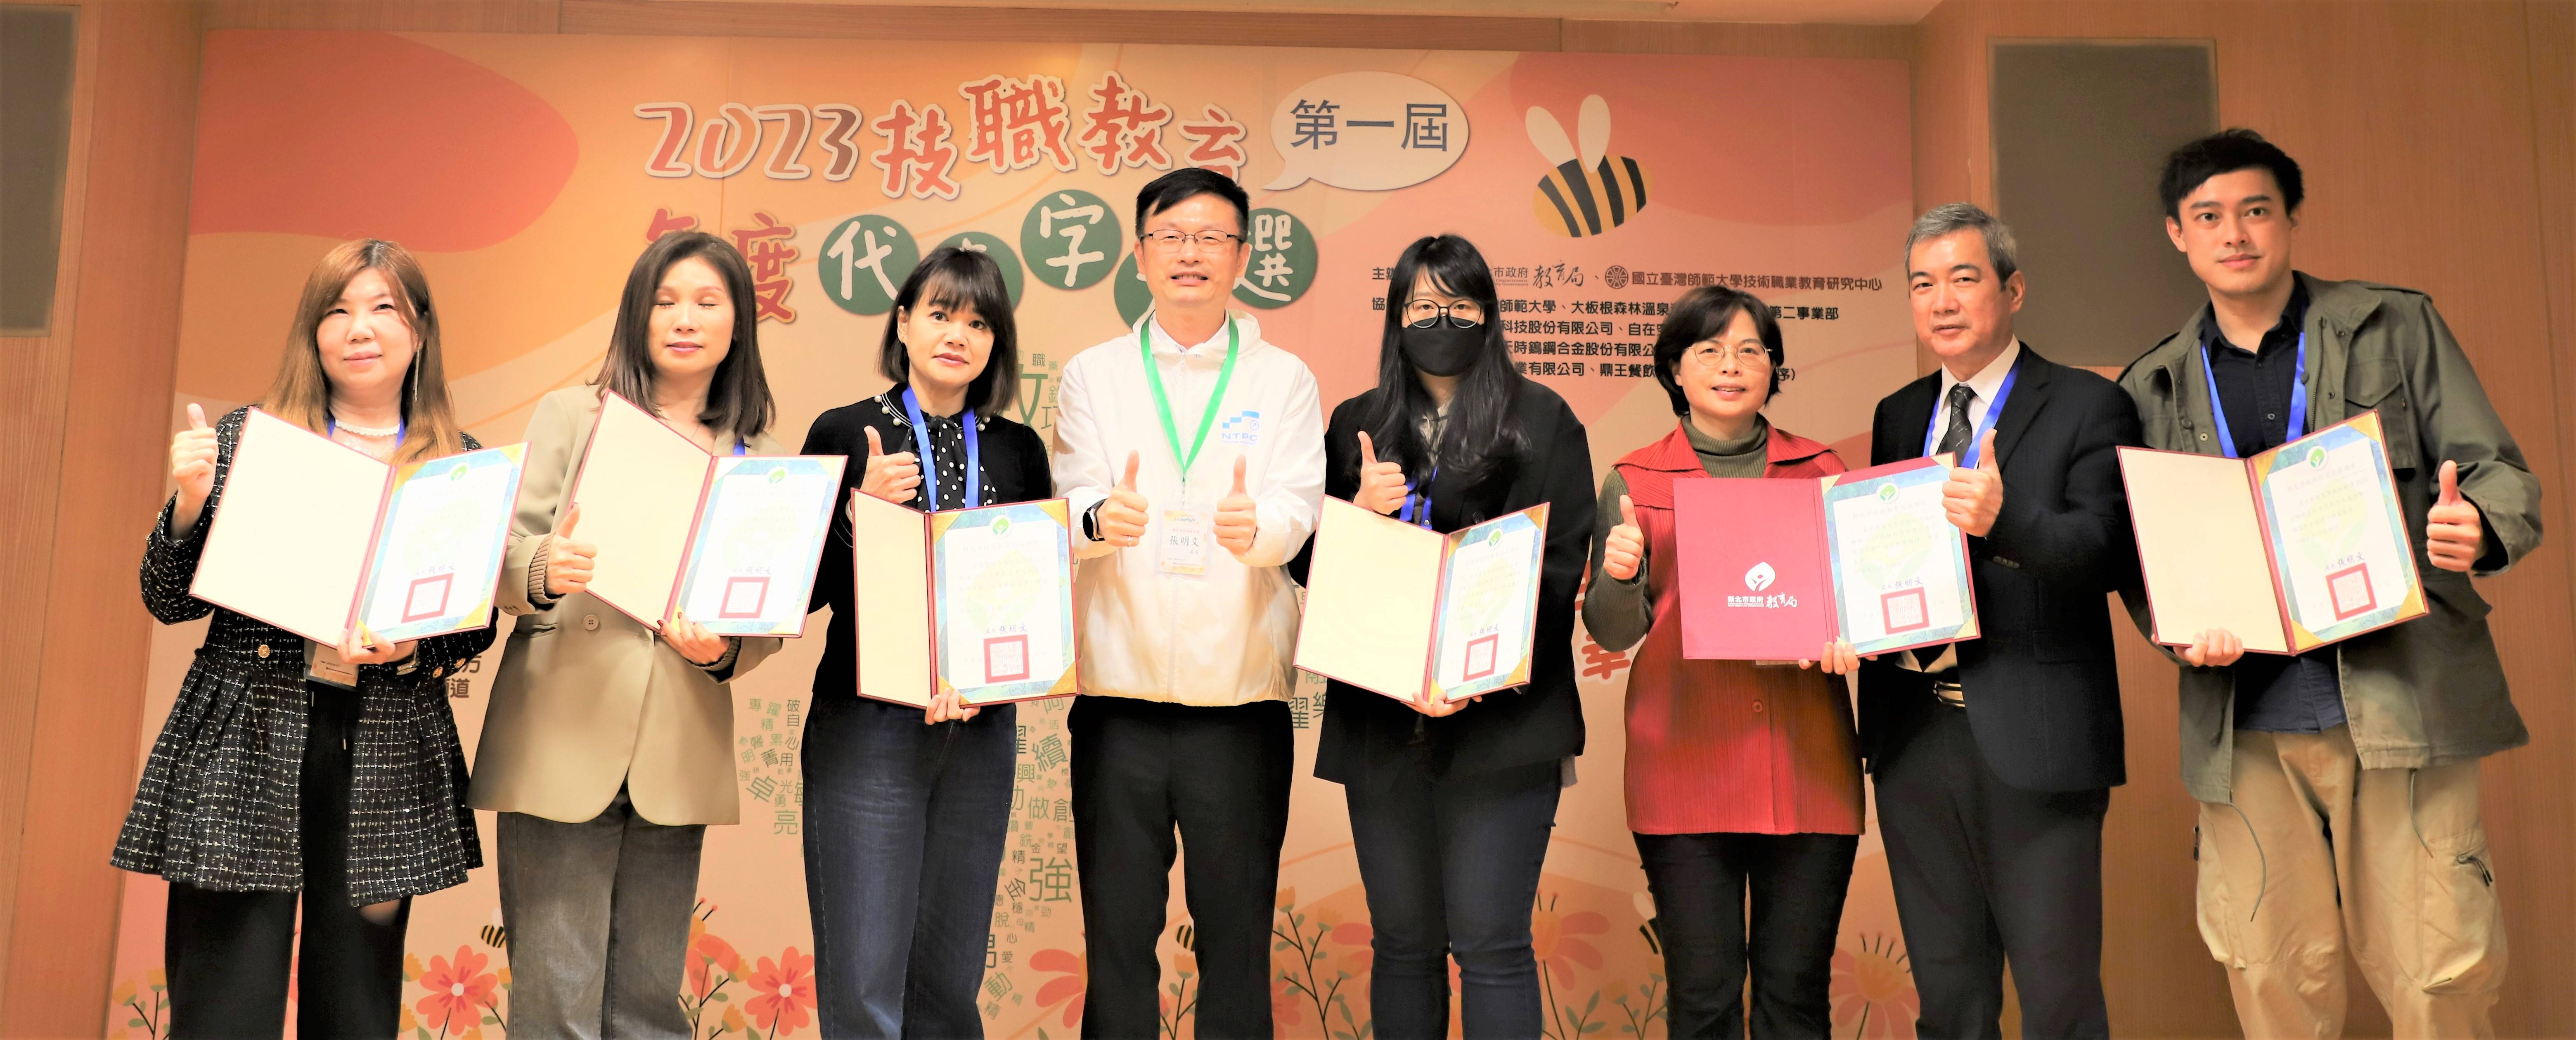 張明文局長(右5)頒贈感謝狀給贊助廠商代表.JPG